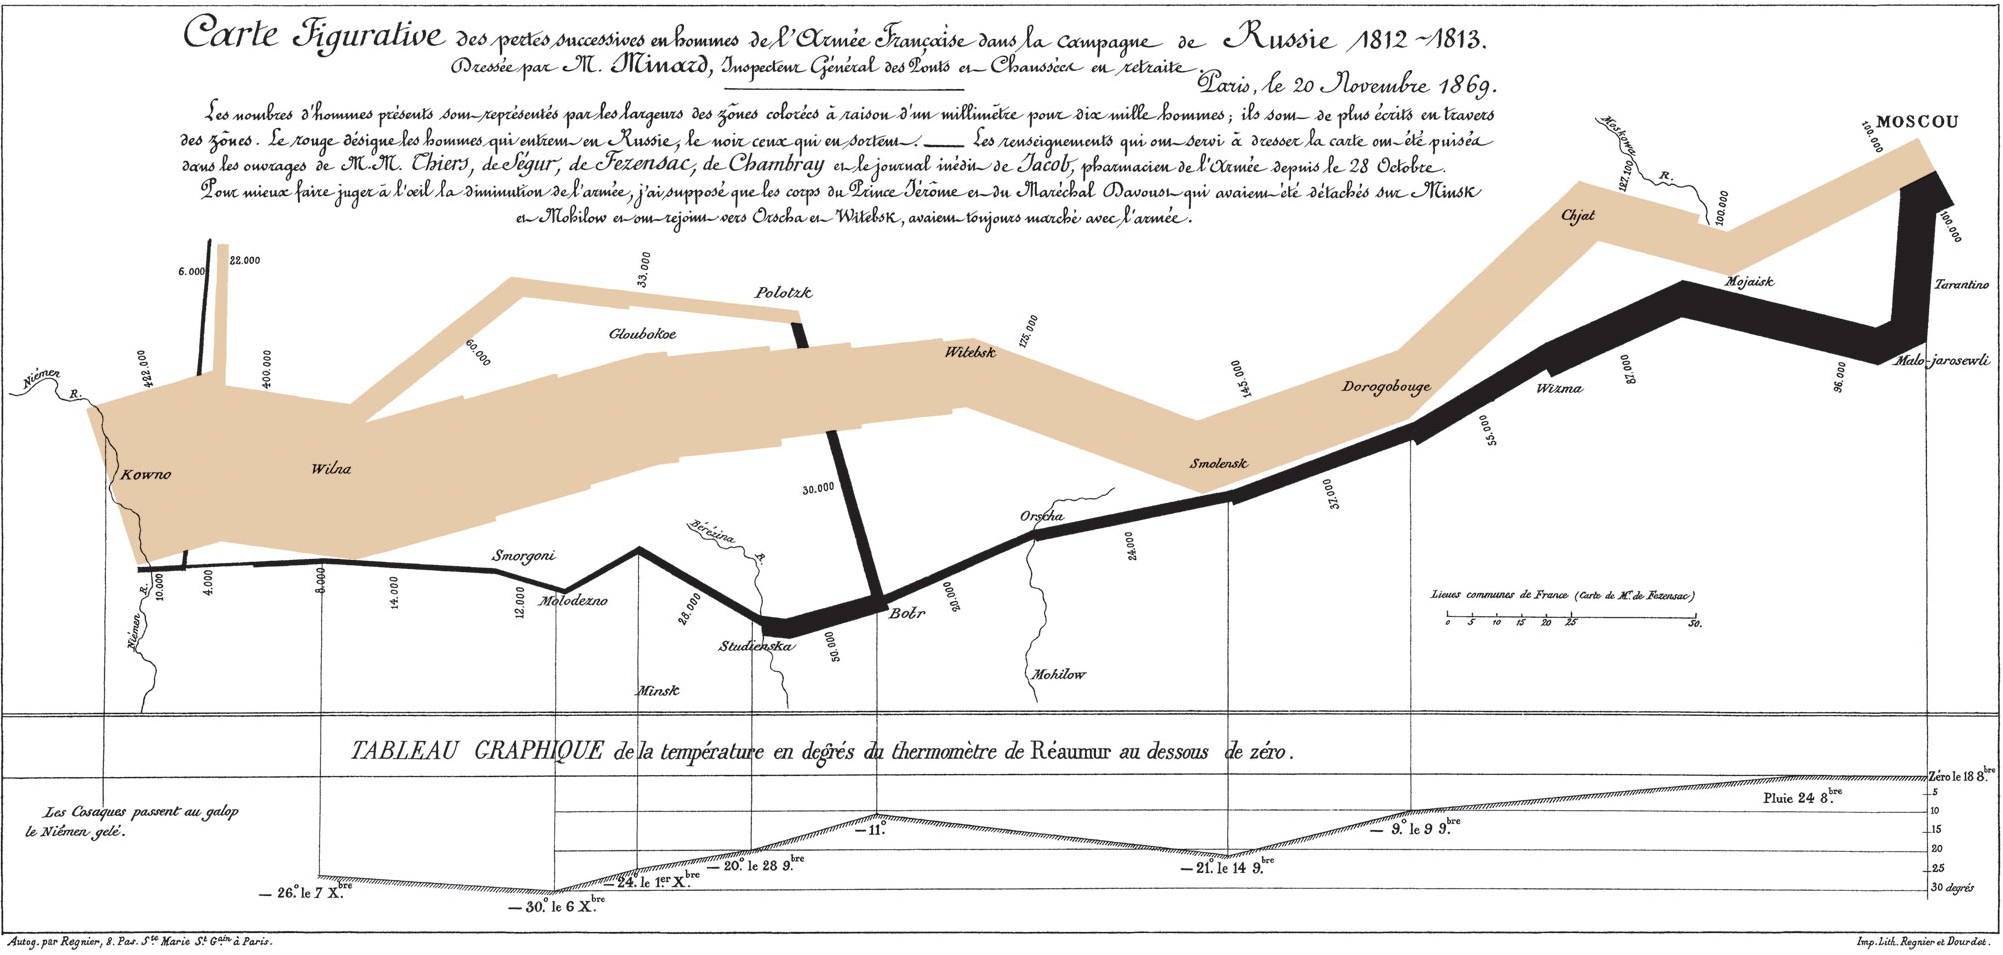 Minard 绘制的地图，展现了 1812 年拿破仑的大军团进军俄国的路线（上半部分）和撤退时的气温变化（下半部分）。这一历史事件中，法军数量的急剧减少以及恶劣的气候条件一览无遗，法国科学家 Étienne-Jules Marey 称“该图所展现出的雄辩对历史学家的笔是一种极大的挑战”